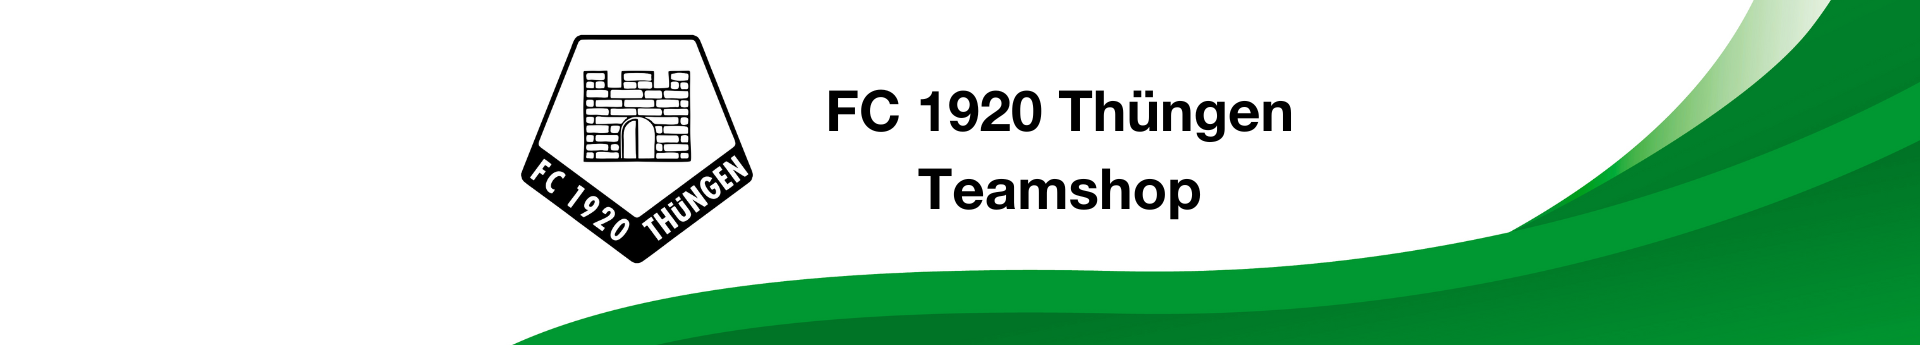 FC 1920 Thuengen Title Image